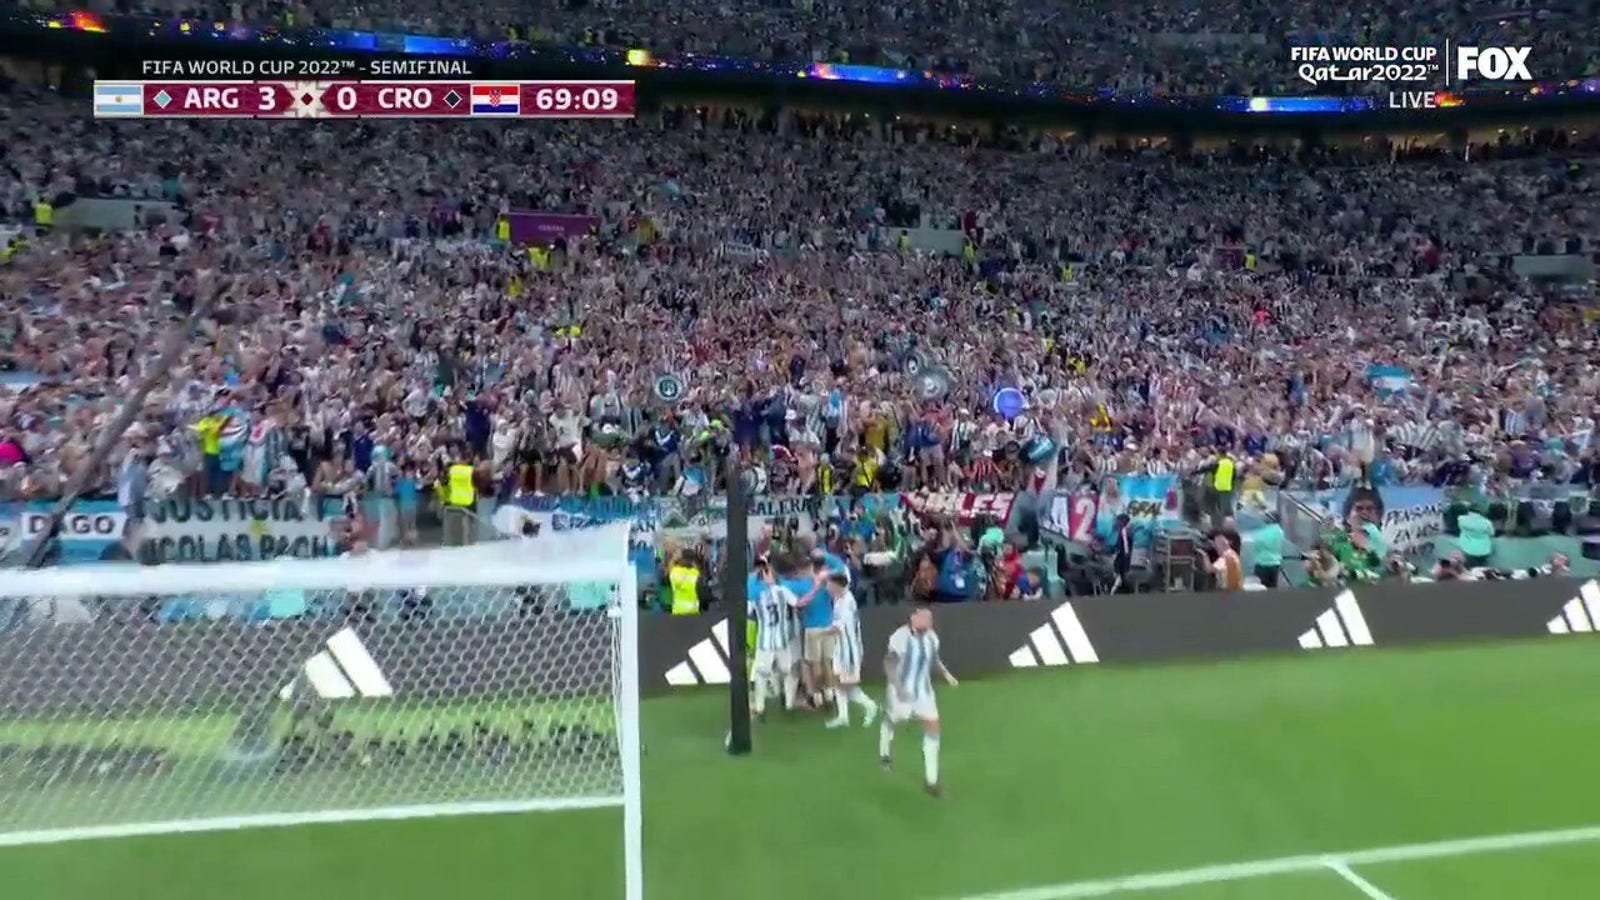 Julian Alvarez dari Argentina mencetak gol melawan Kroasia pada menit ke-69